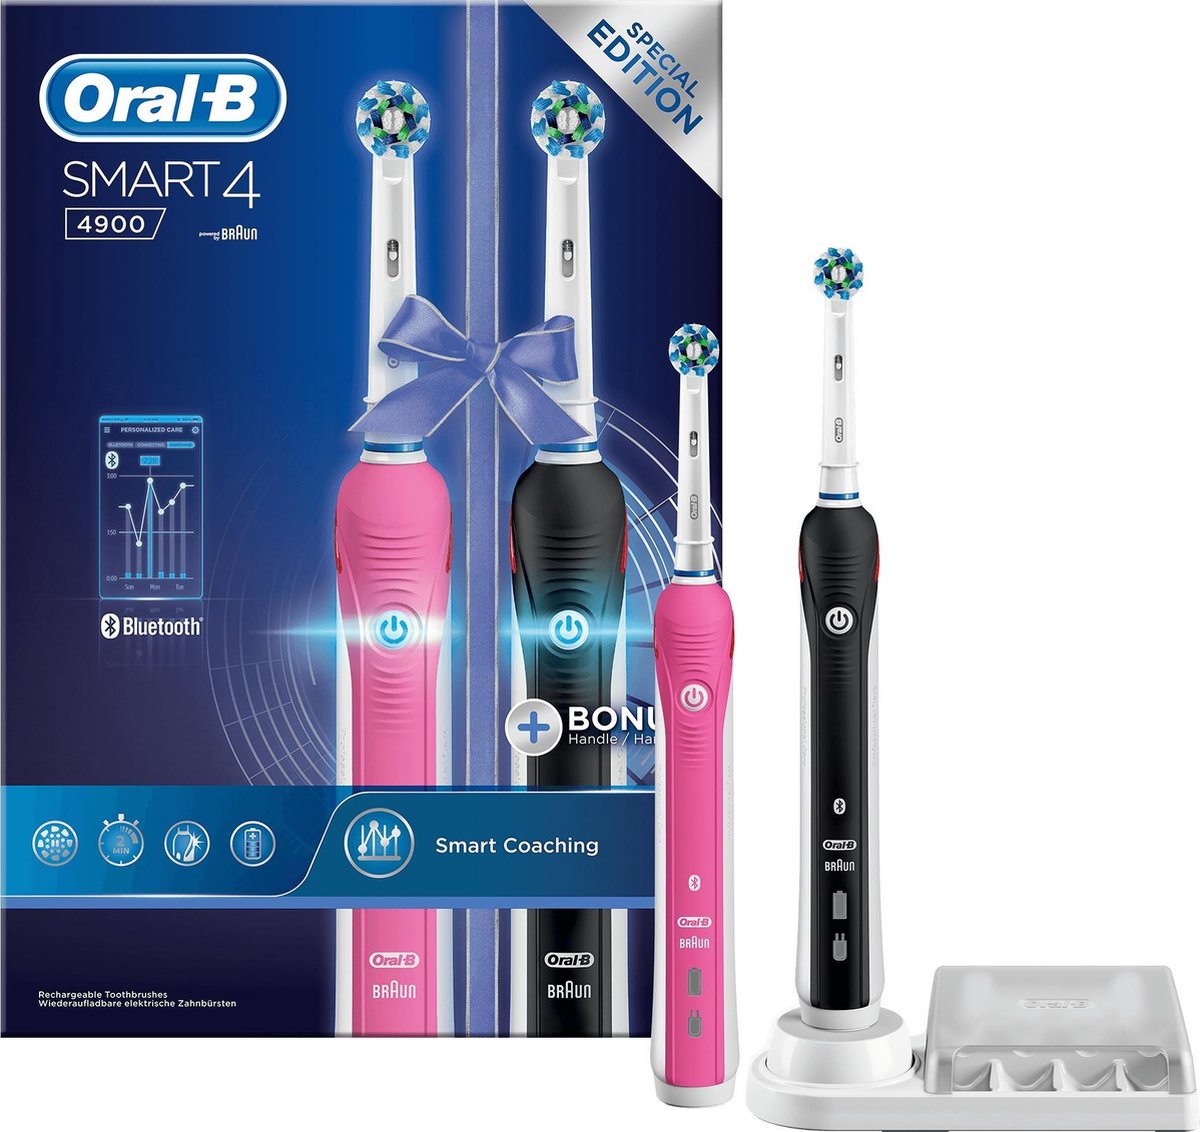 spontaan oogsten engel Oral-B Smart 4 4900 - Elektrische Tandenborstel - Duopack | bol.com